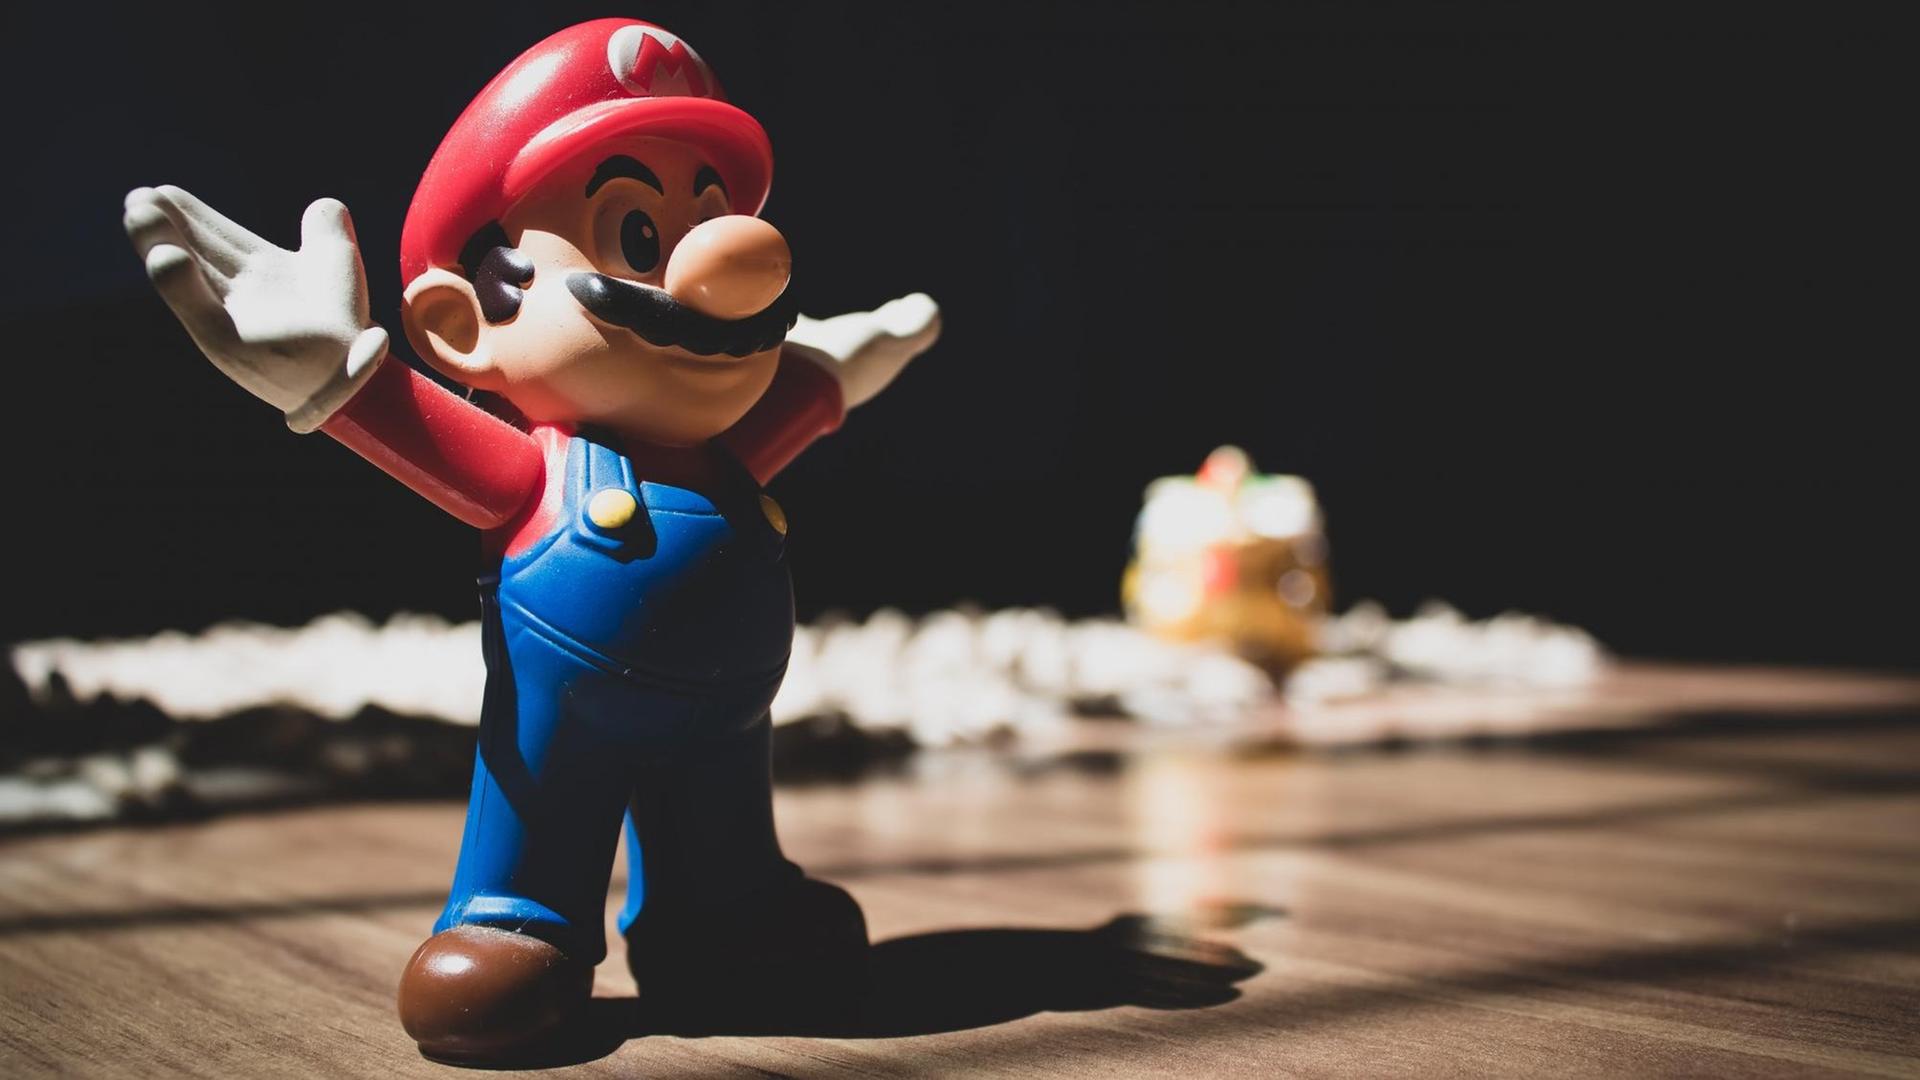 Eine Figur aus dem Spiel Super-Mario steht mit ausgebreiteten Armen auf einem Tisch